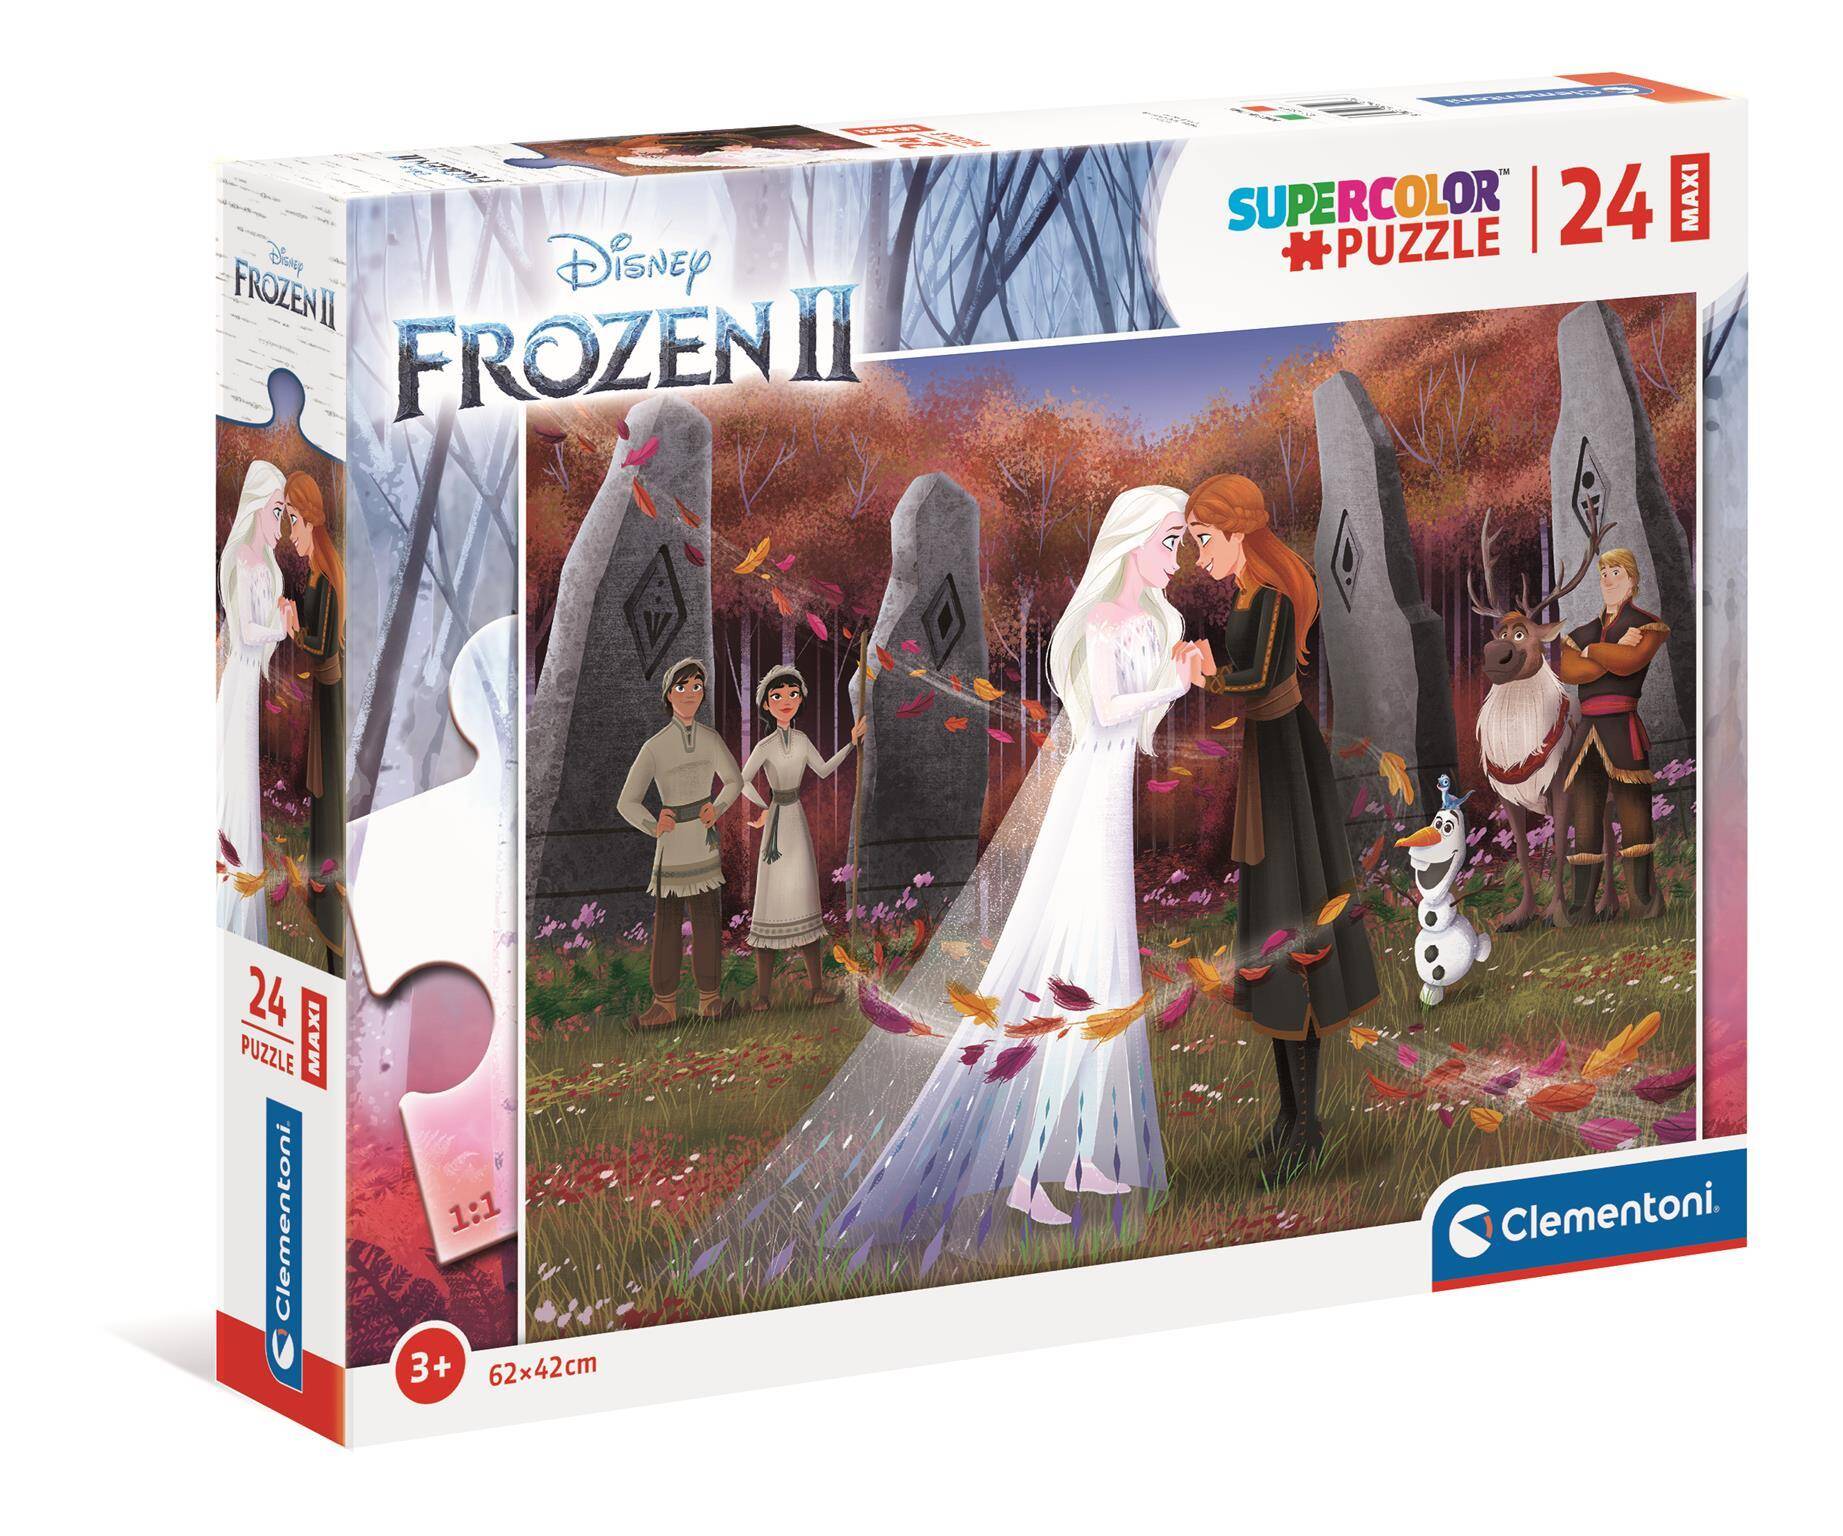 Puzzle 24 maxi super color Frozen 2 24217